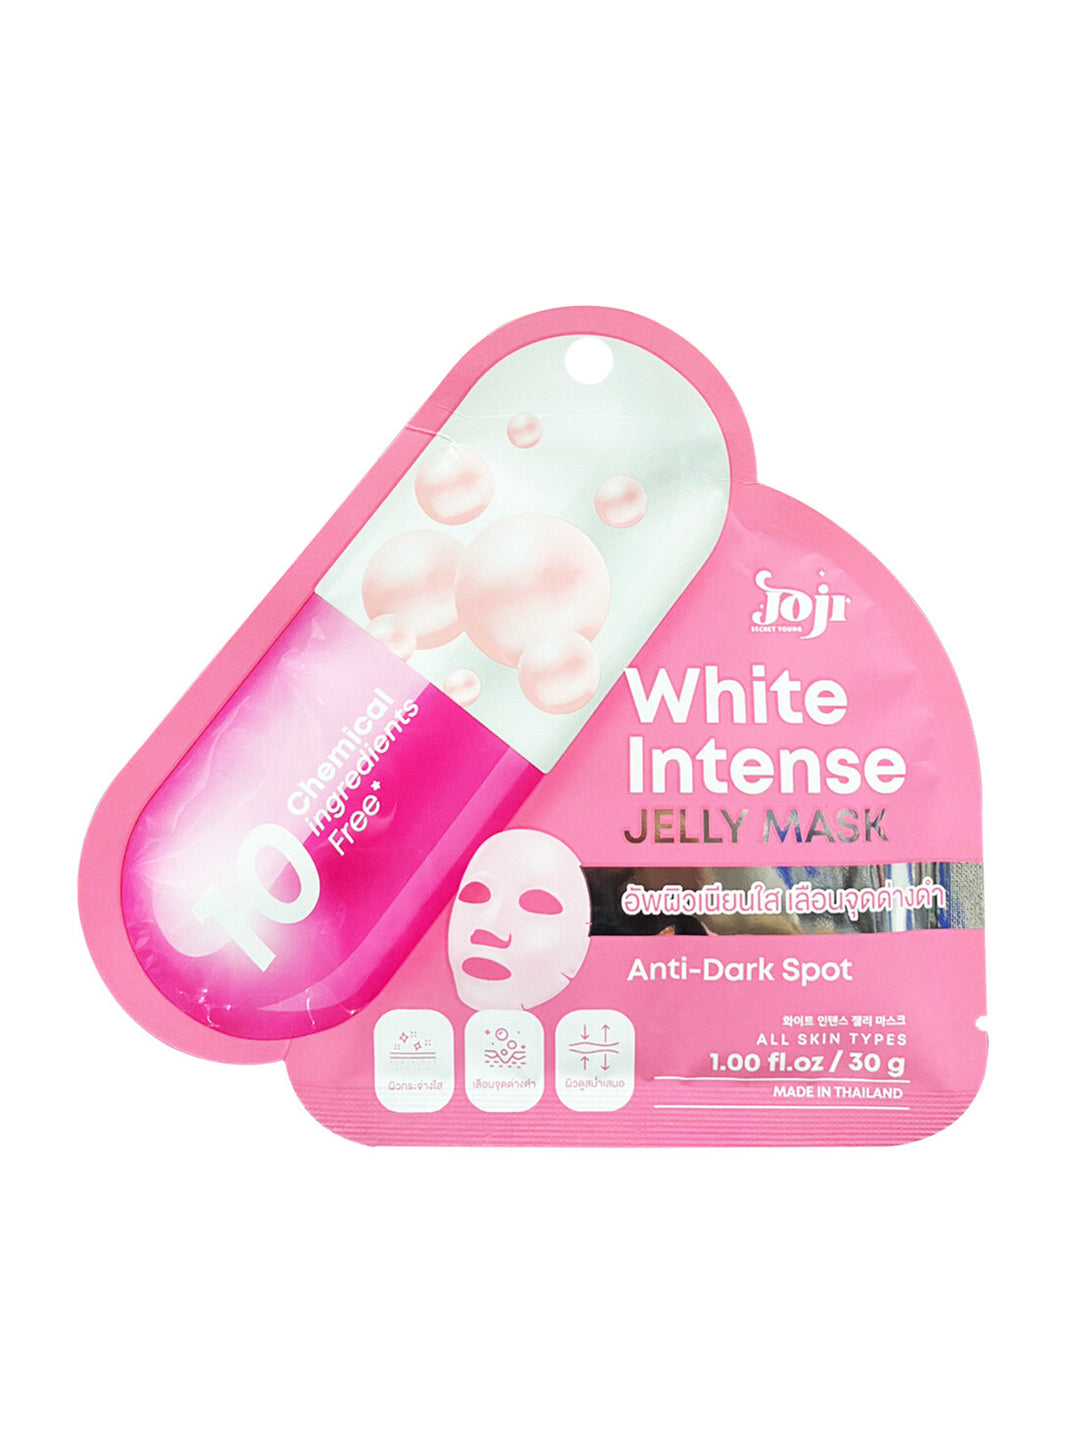 Joji White Intense Jelly Mask 30G Anti-Dark Spot (Thai)